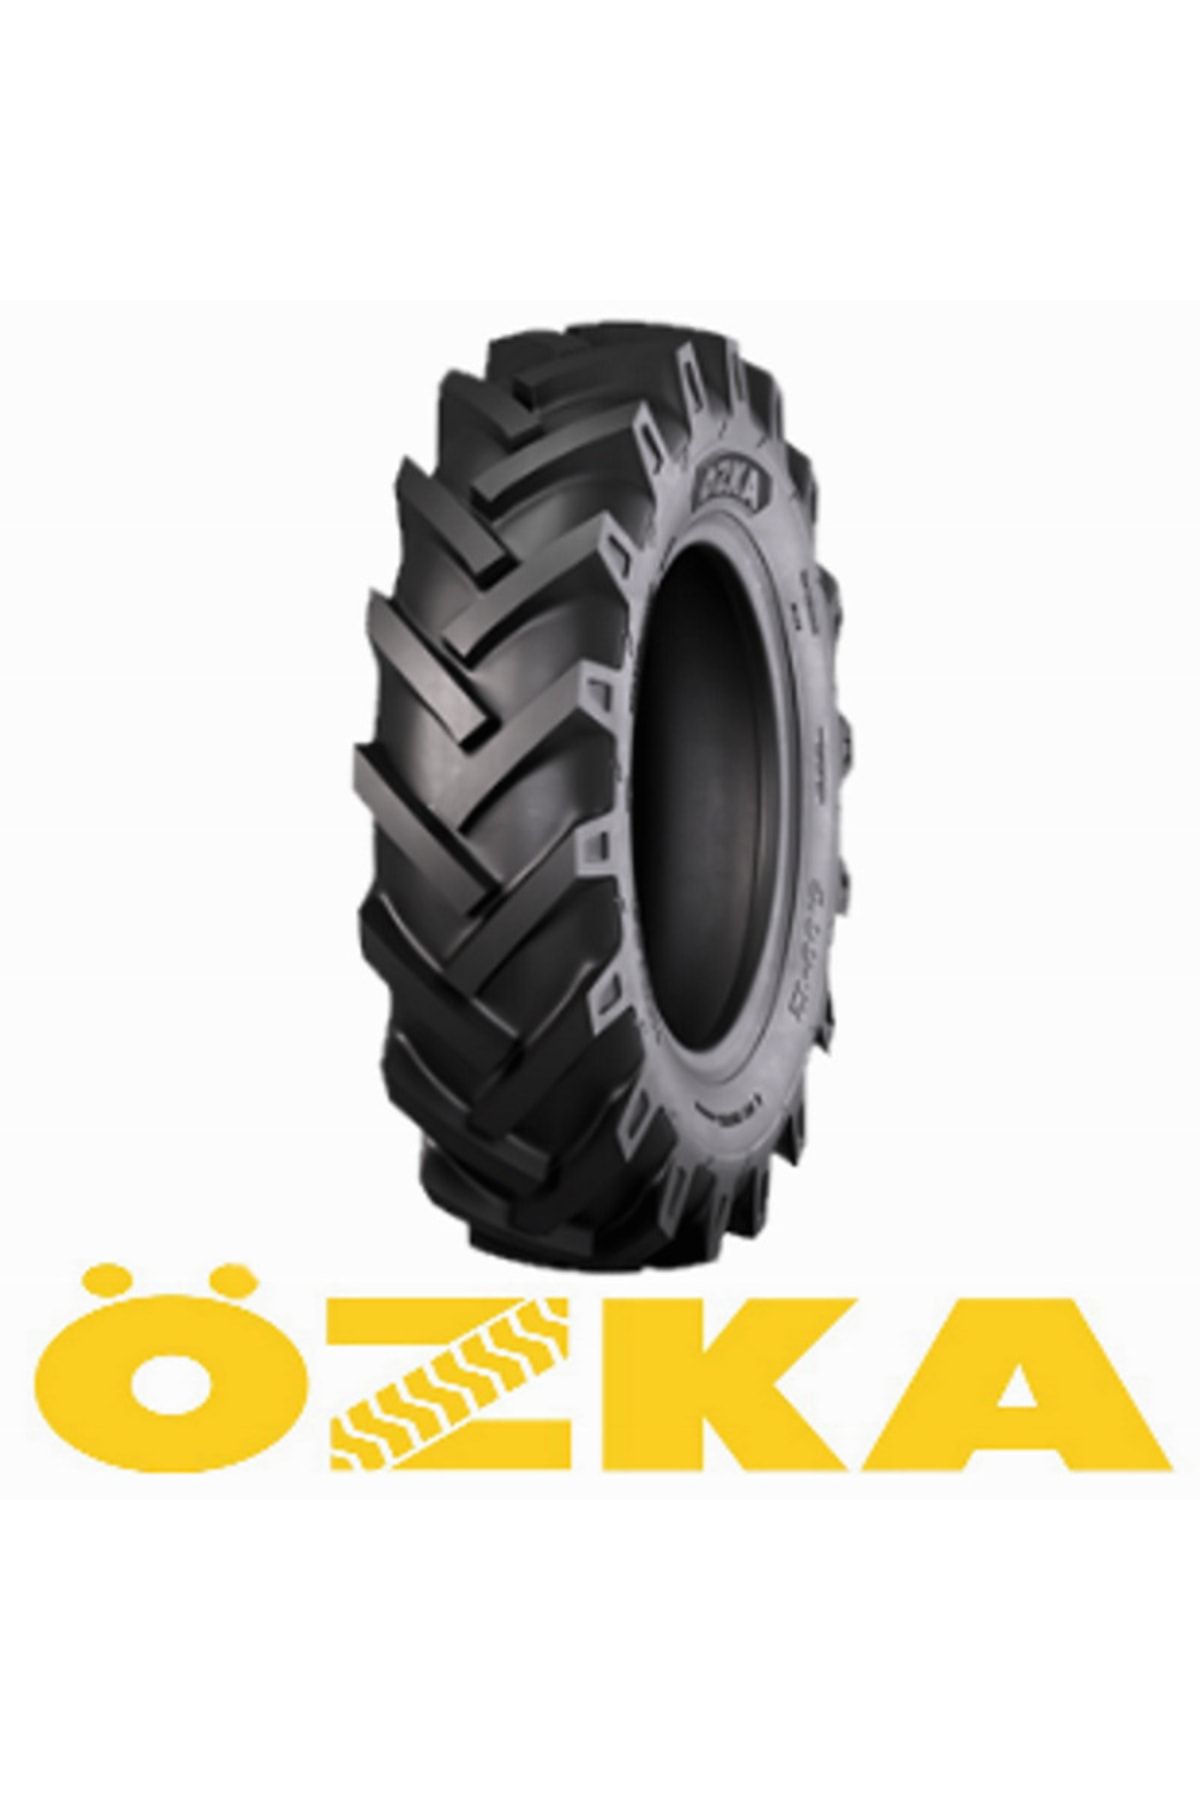 Özka 7.50-16 8pr Knk50 Traktör Ön Lastiği 2022 Üretim